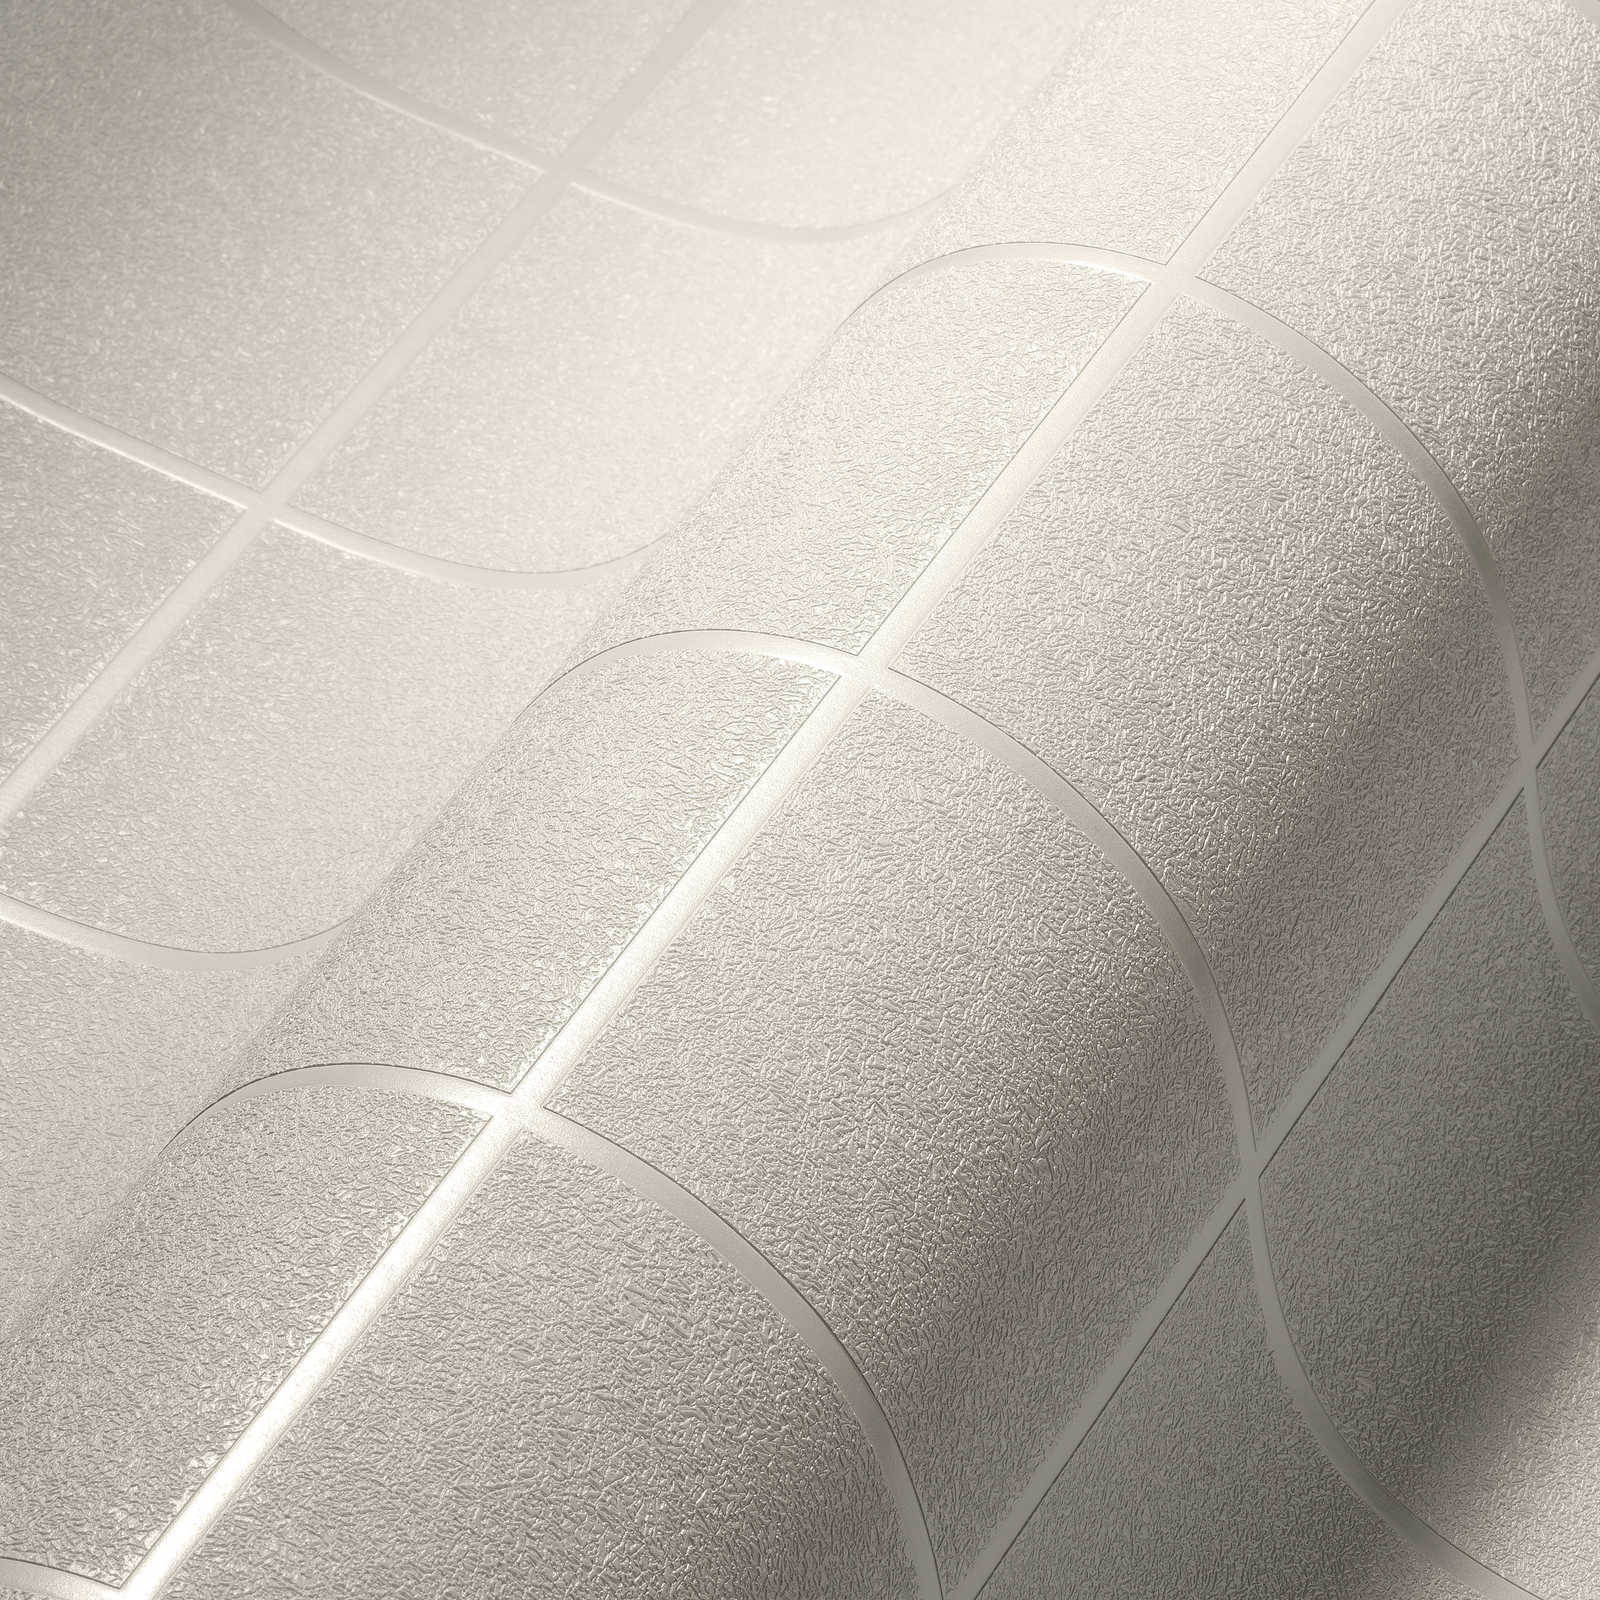             Papier peint motif carreaux, joints sombres & effet 3D - argent, blanc
        